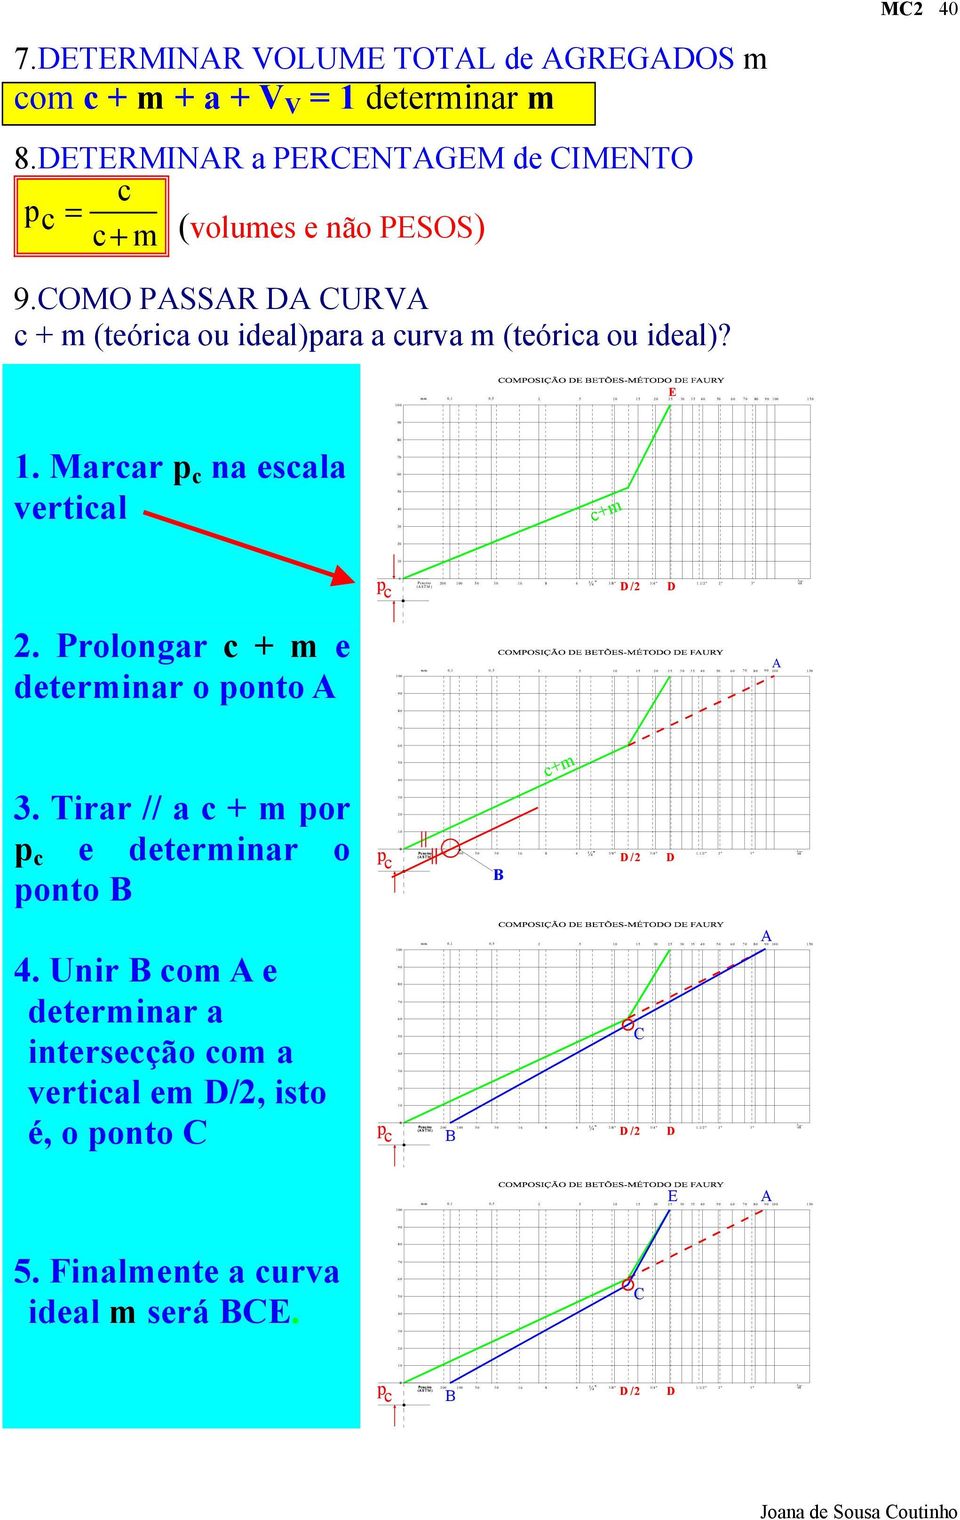 Marcar p c na escala vertical 80 70 60 50 40 30 c+m 20 10 p c 0 Peneiro (A STM ) 200 100 50 30 16 8 4 ¼ 3/8" D/2 3/4" D 1.1/2" 2" 3" 5 d 2.